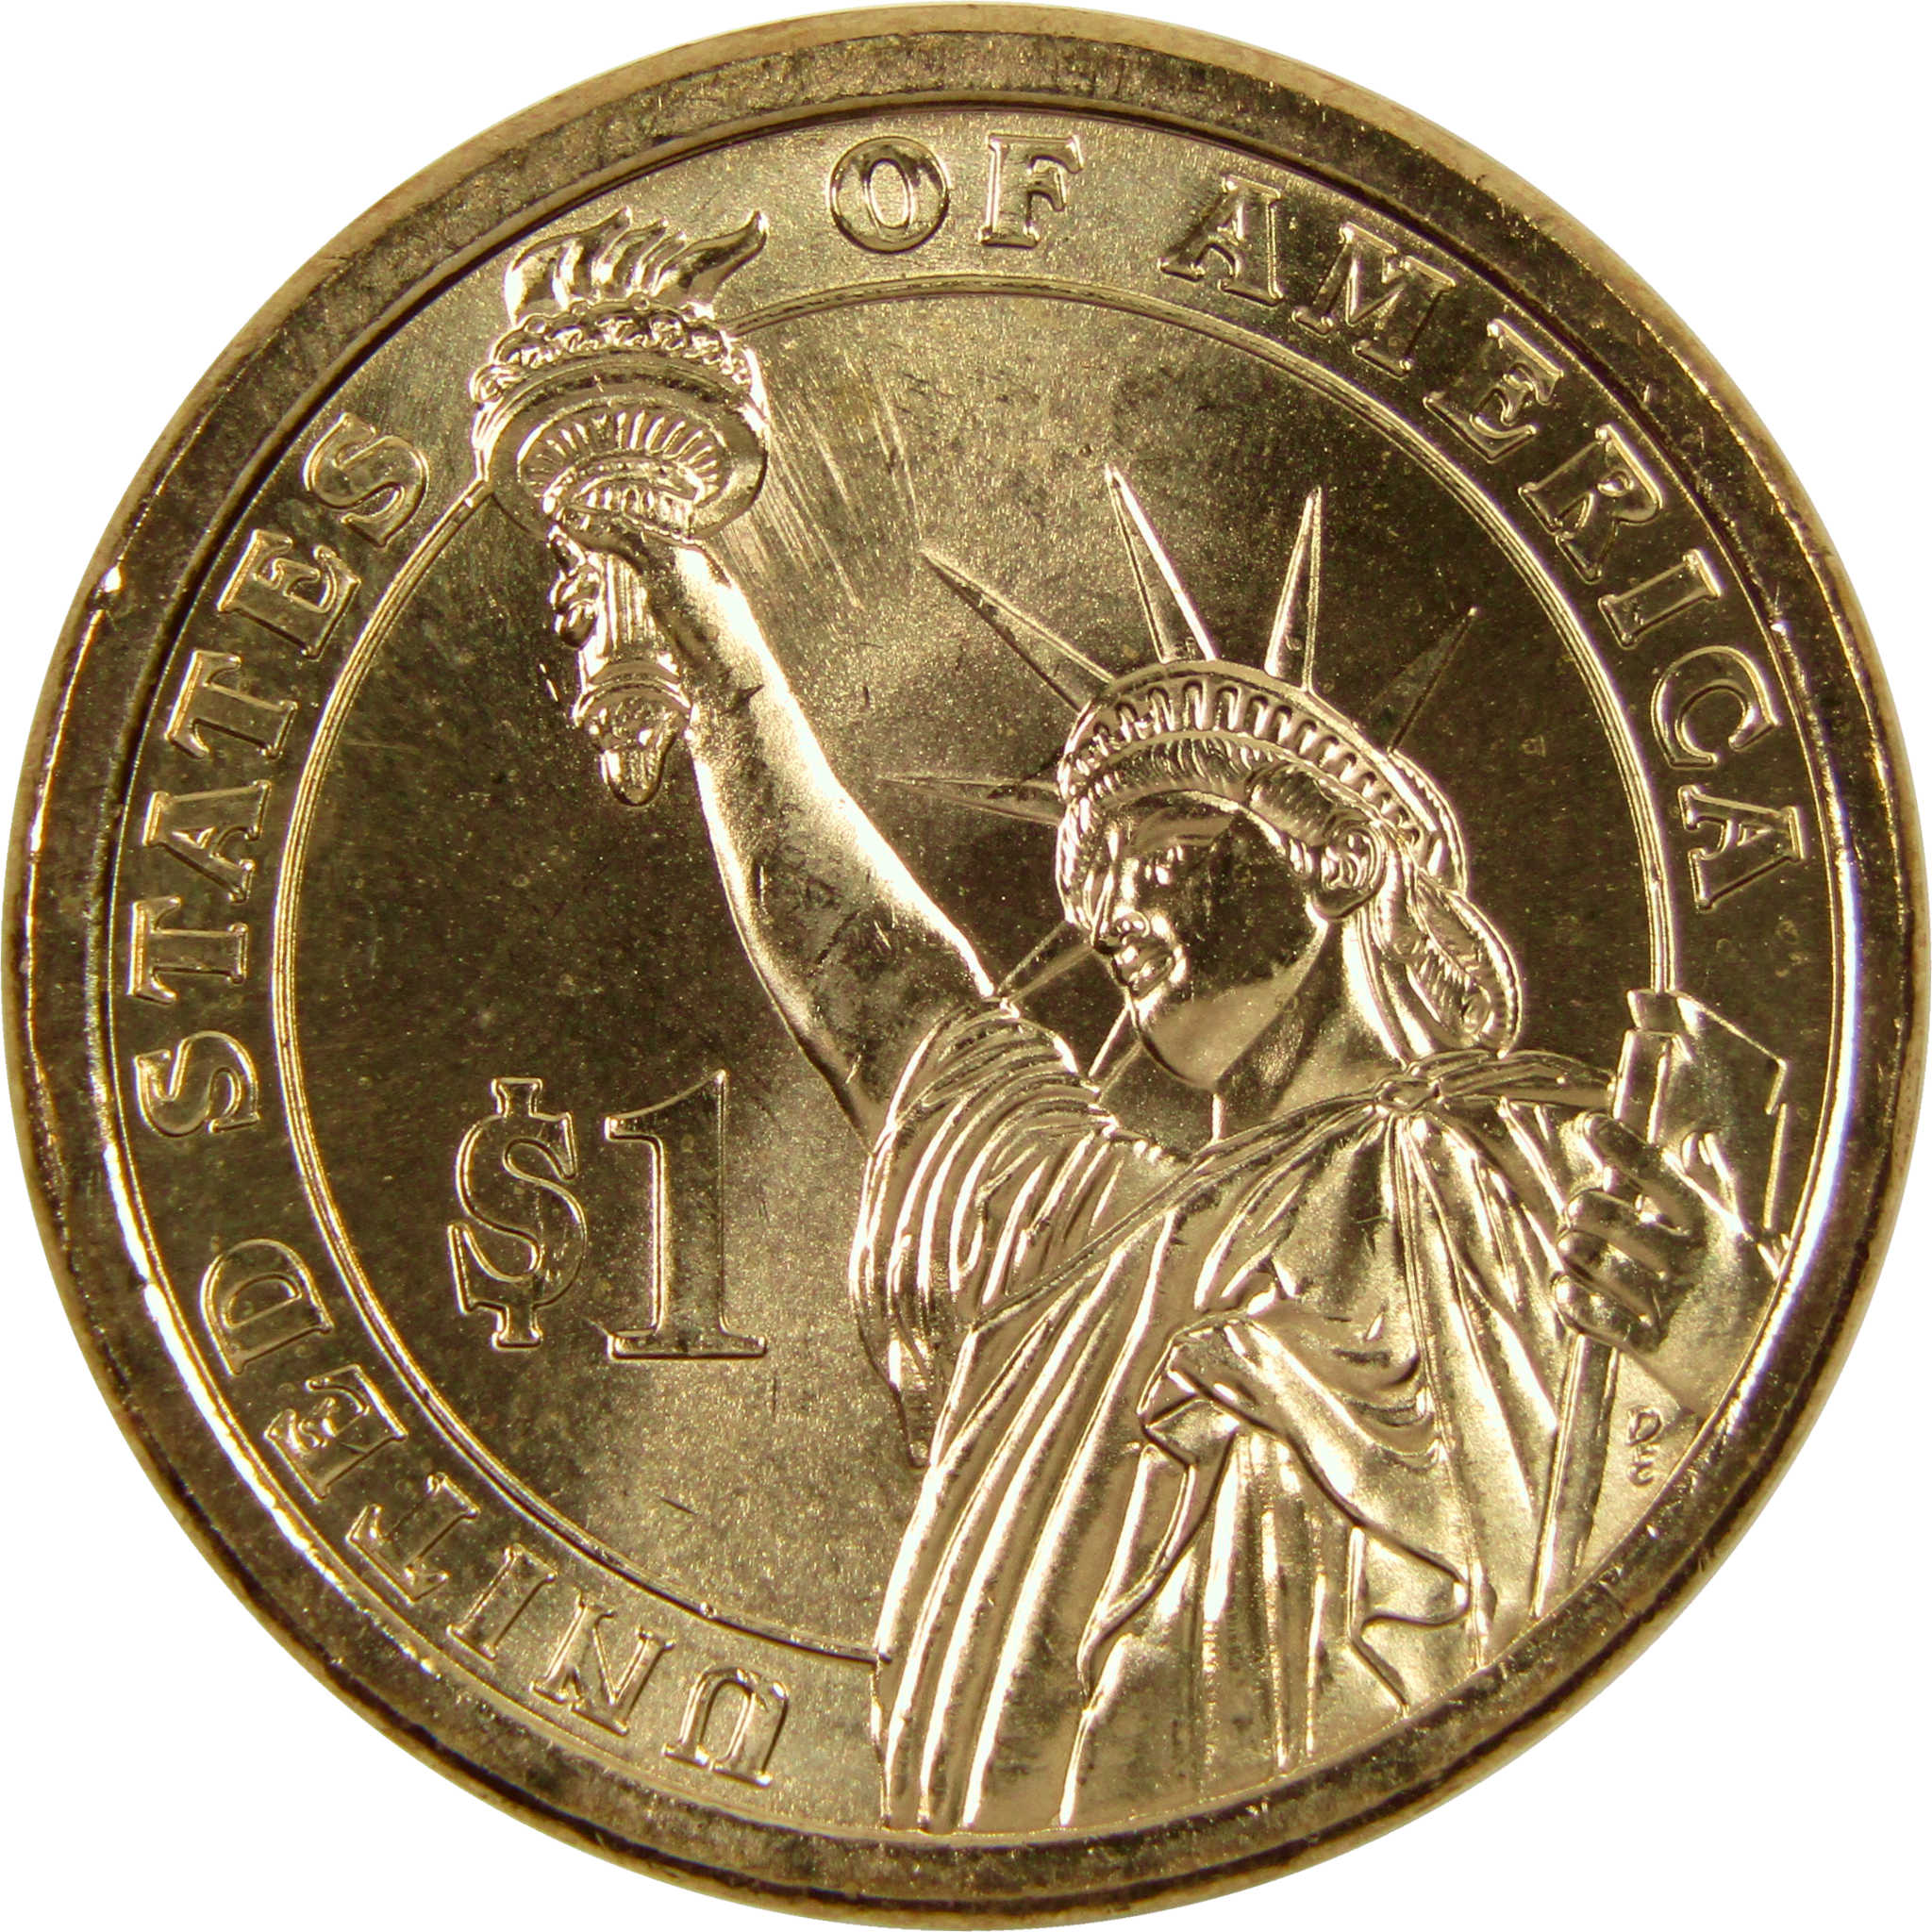 2008 P James Monroe Presidential Dollar BU Uncirculated $1 Coin